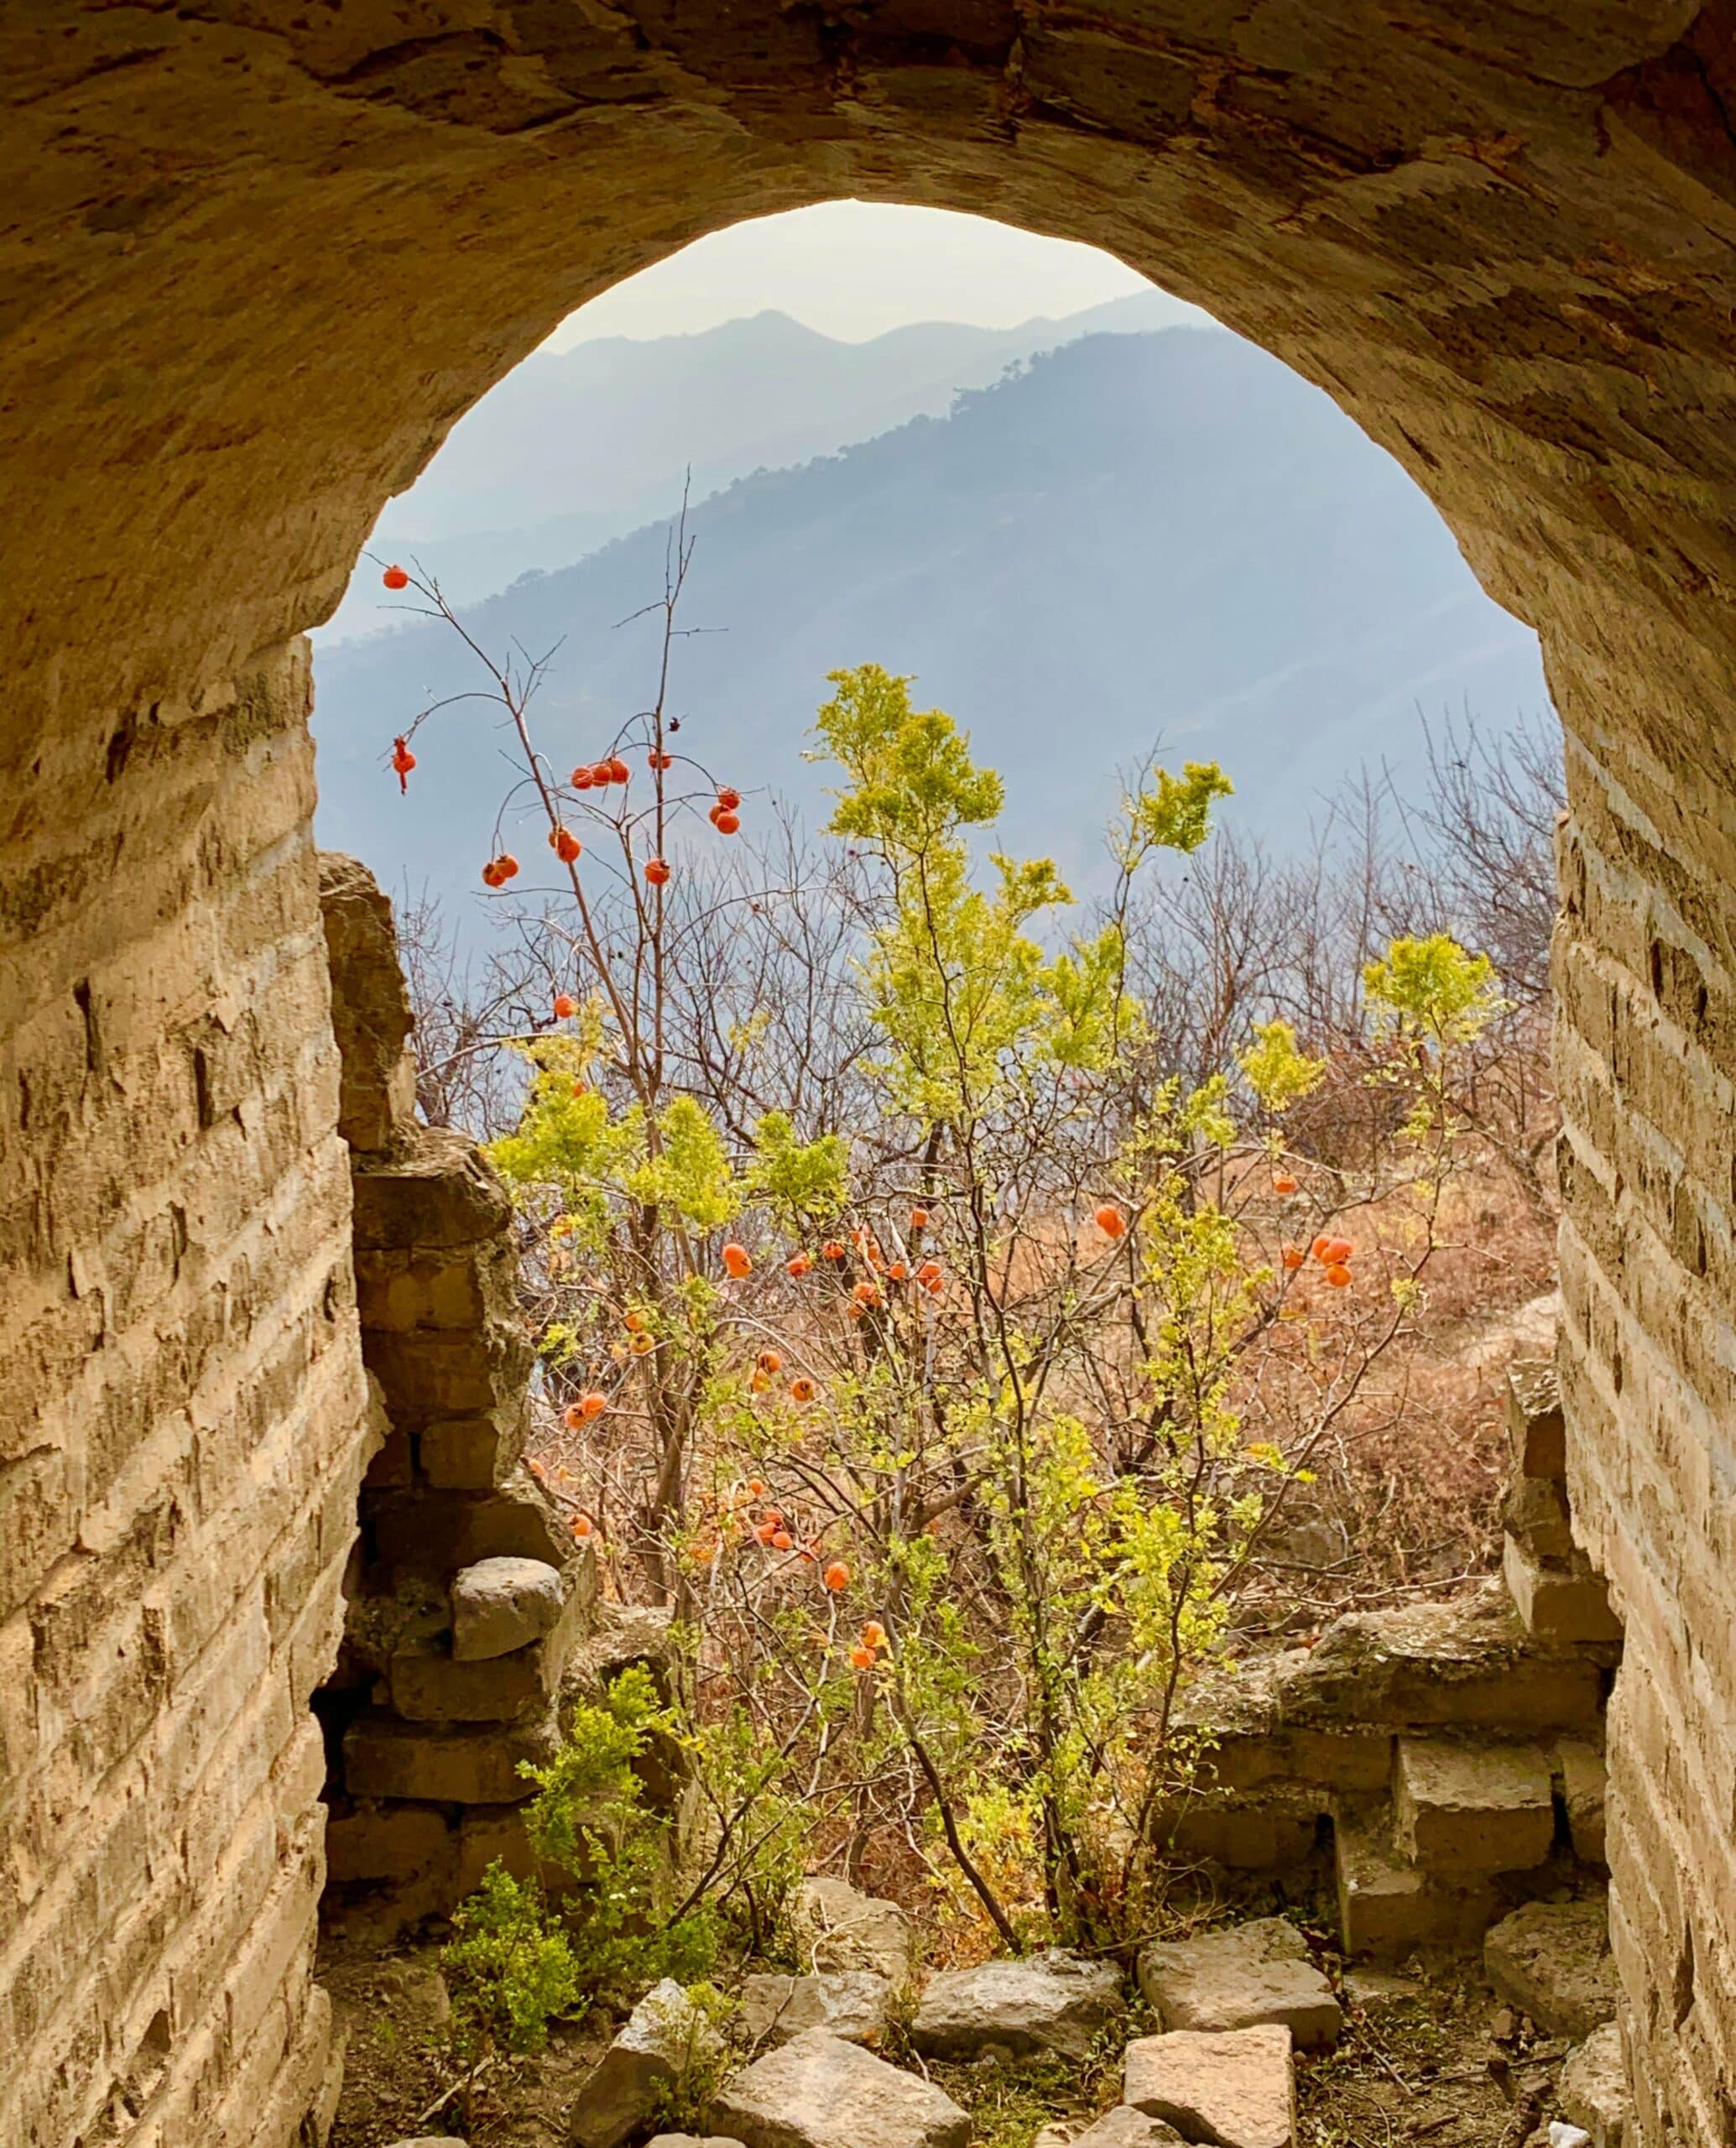 View of Beijing colors. Photo: Kirsten Harrington